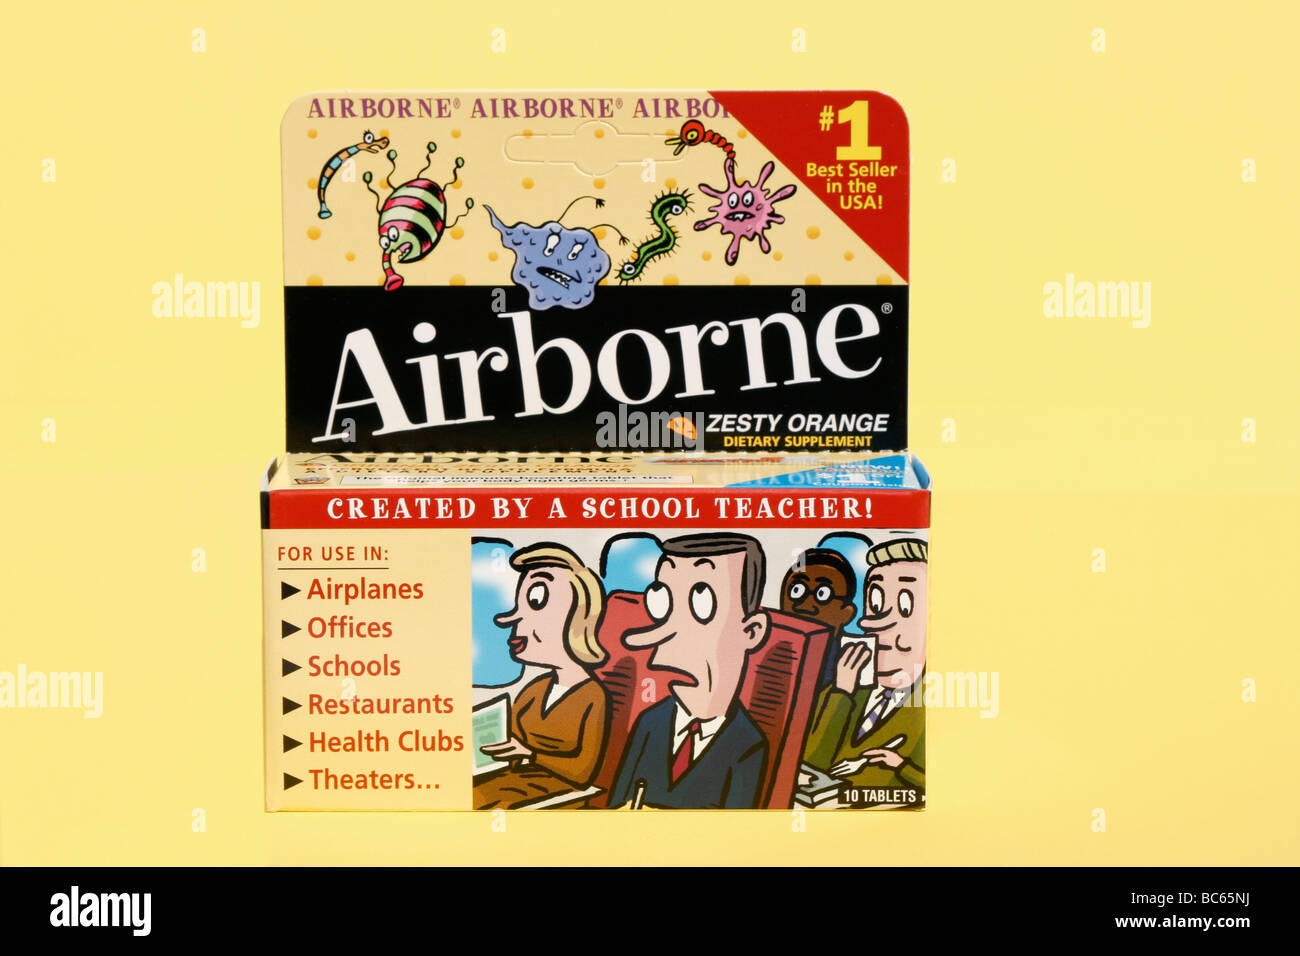 Airborne salute formula pacchetto che rivendicazioni per prevenire raffreddori e influenza. La FTC ha decretato che Airborne è stato falsamente pubblicizzato. Foto Stock